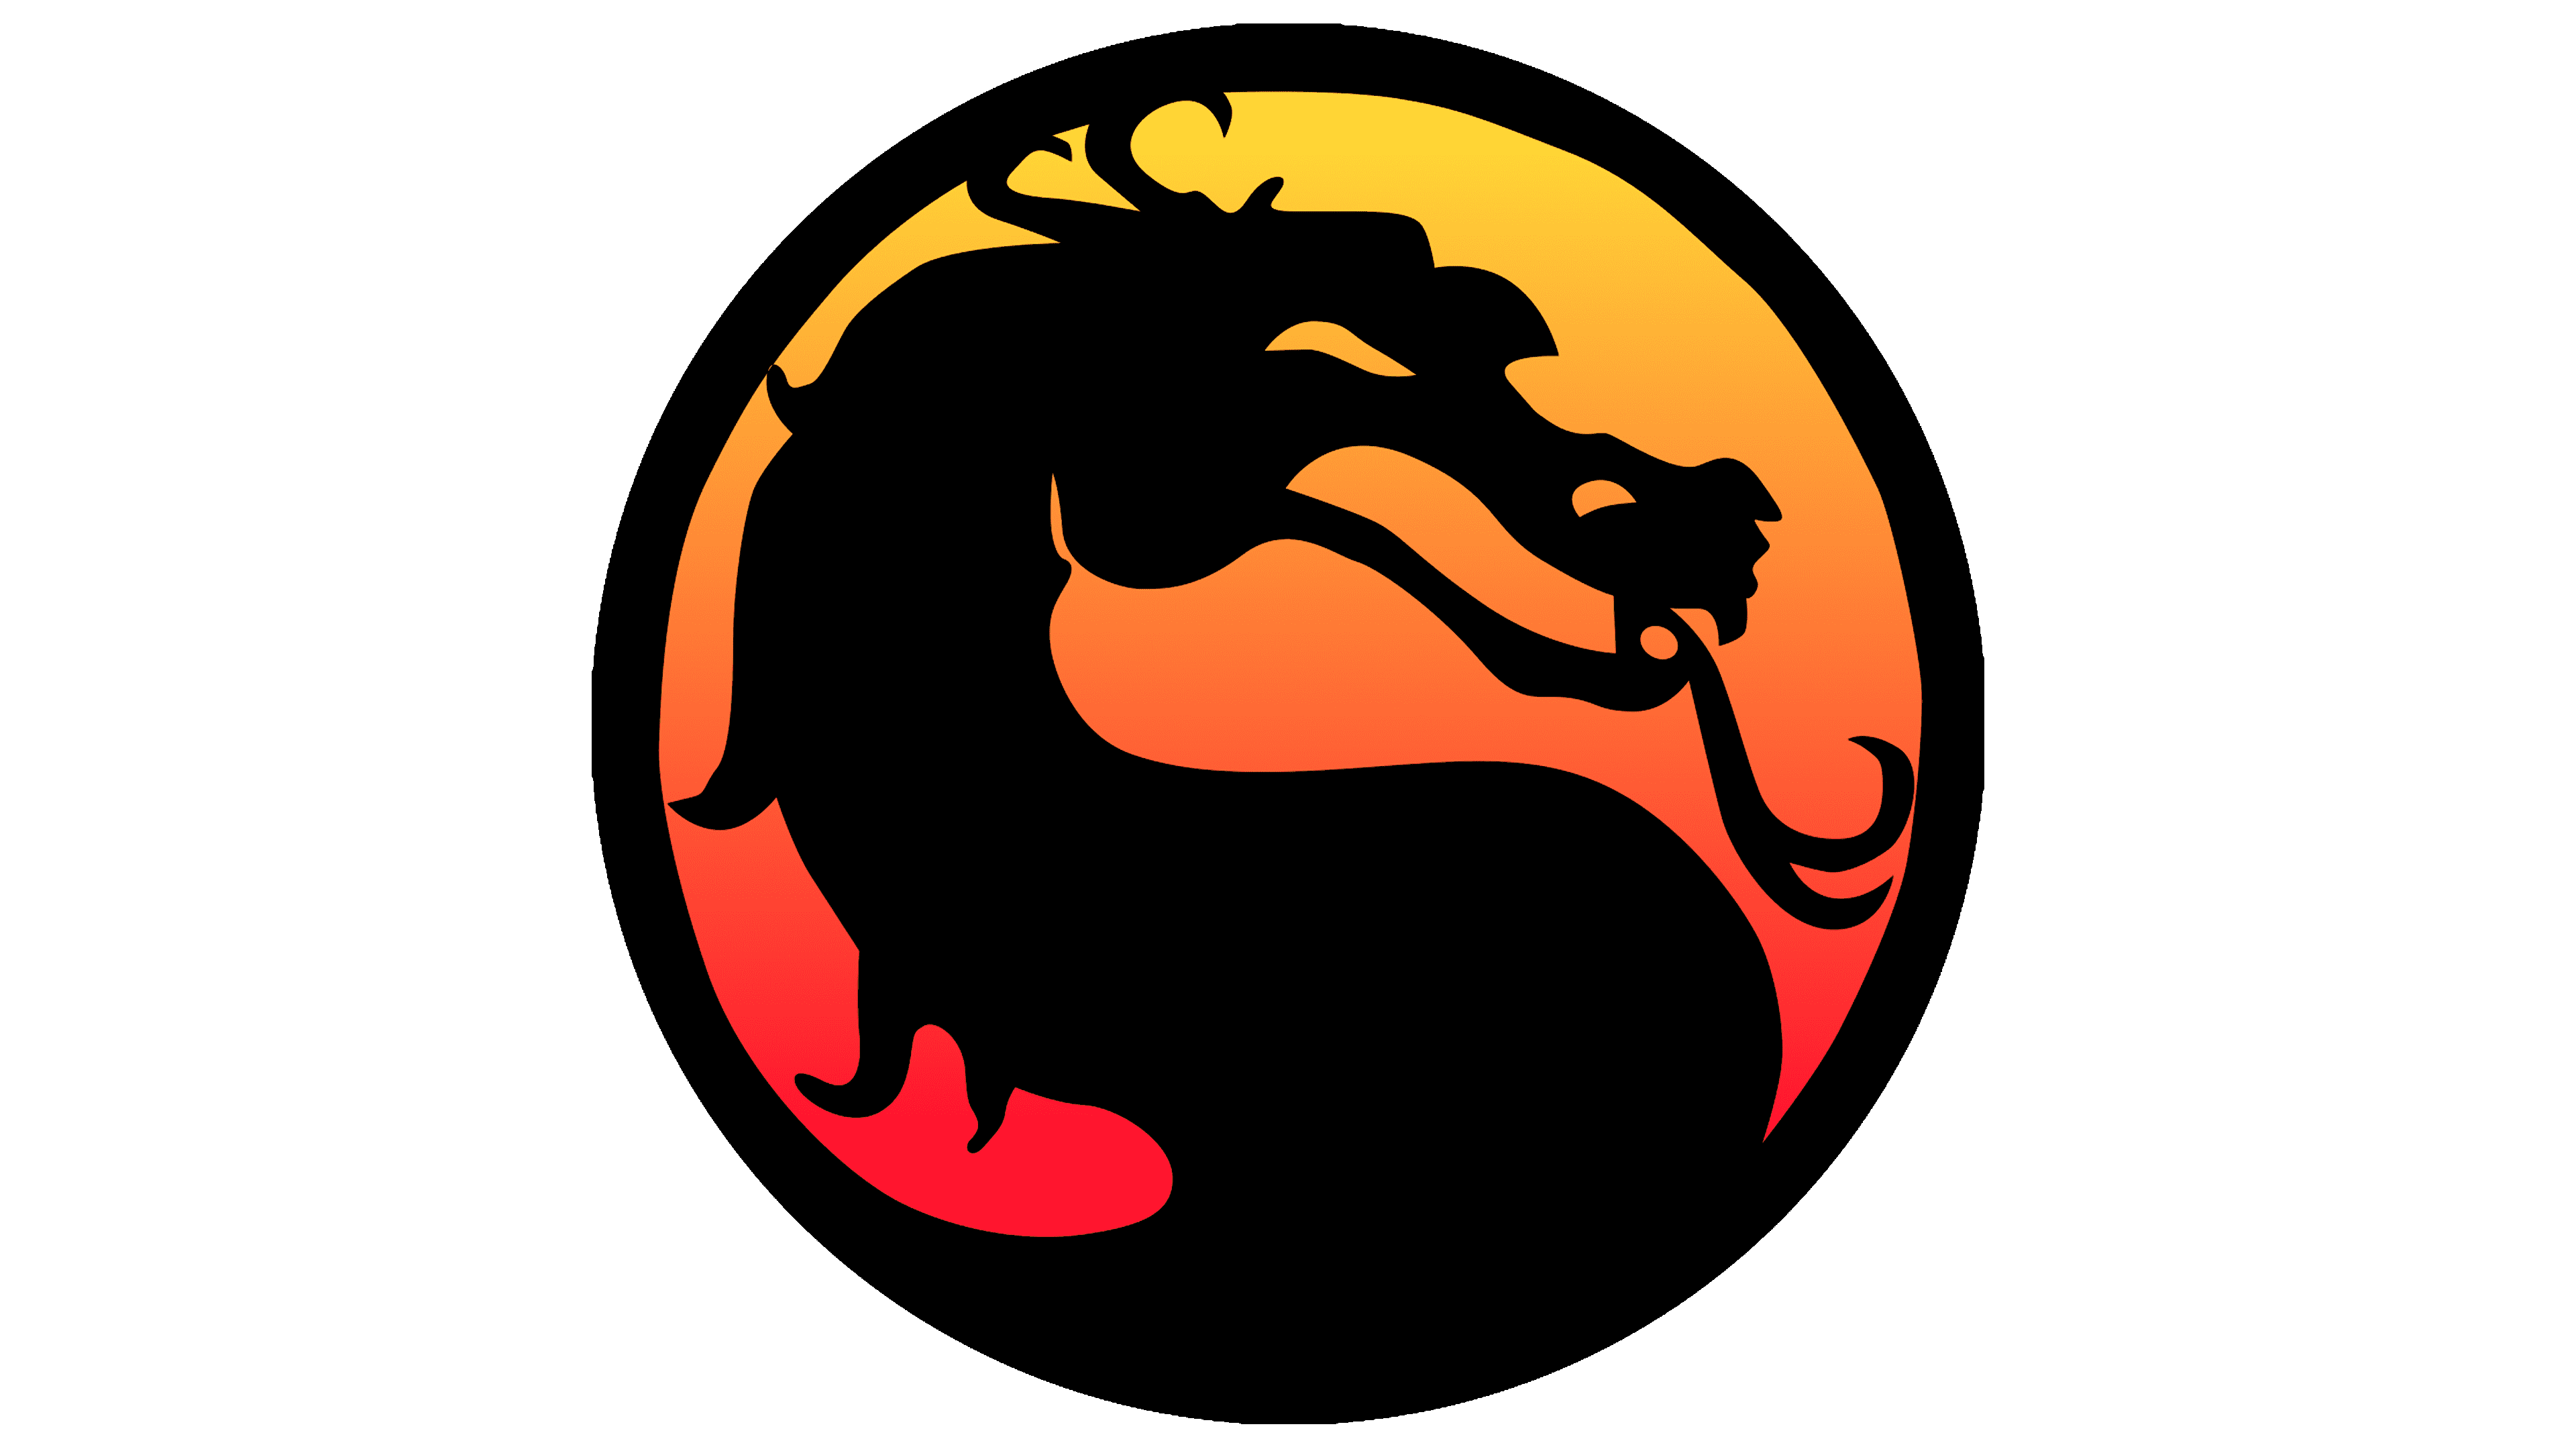 โลโก้ Mortal Kombat ภาพ PNG ฟรี